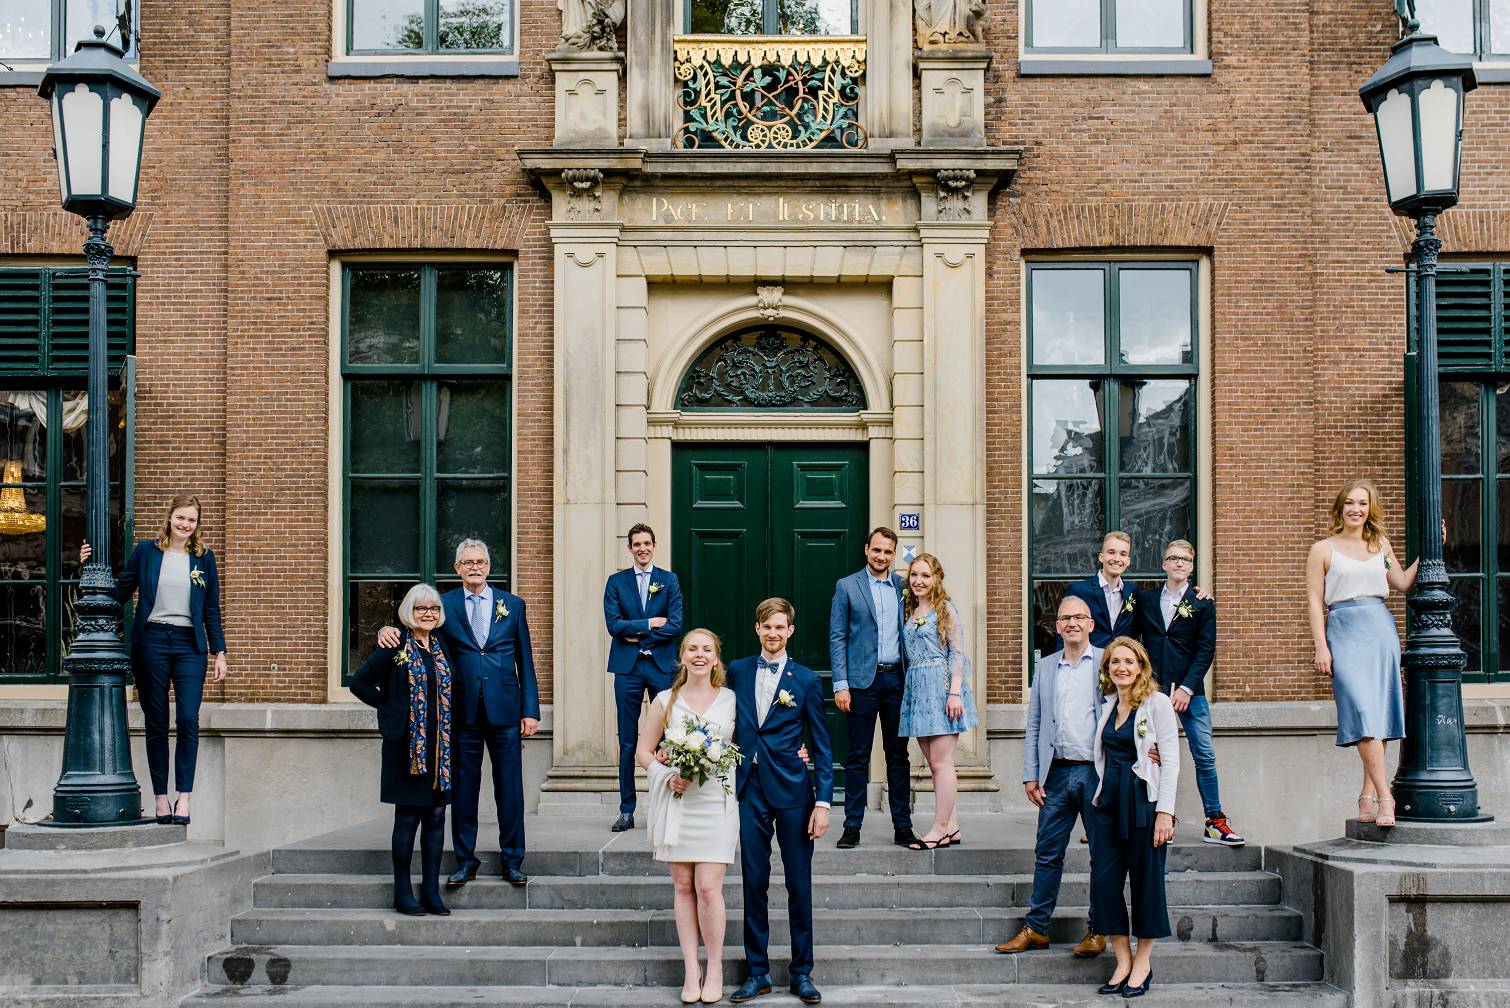 Corona groepsfoto - Corona bruiloft - Trouwen in 2020 - Trouwfotograaf Leeuwarden